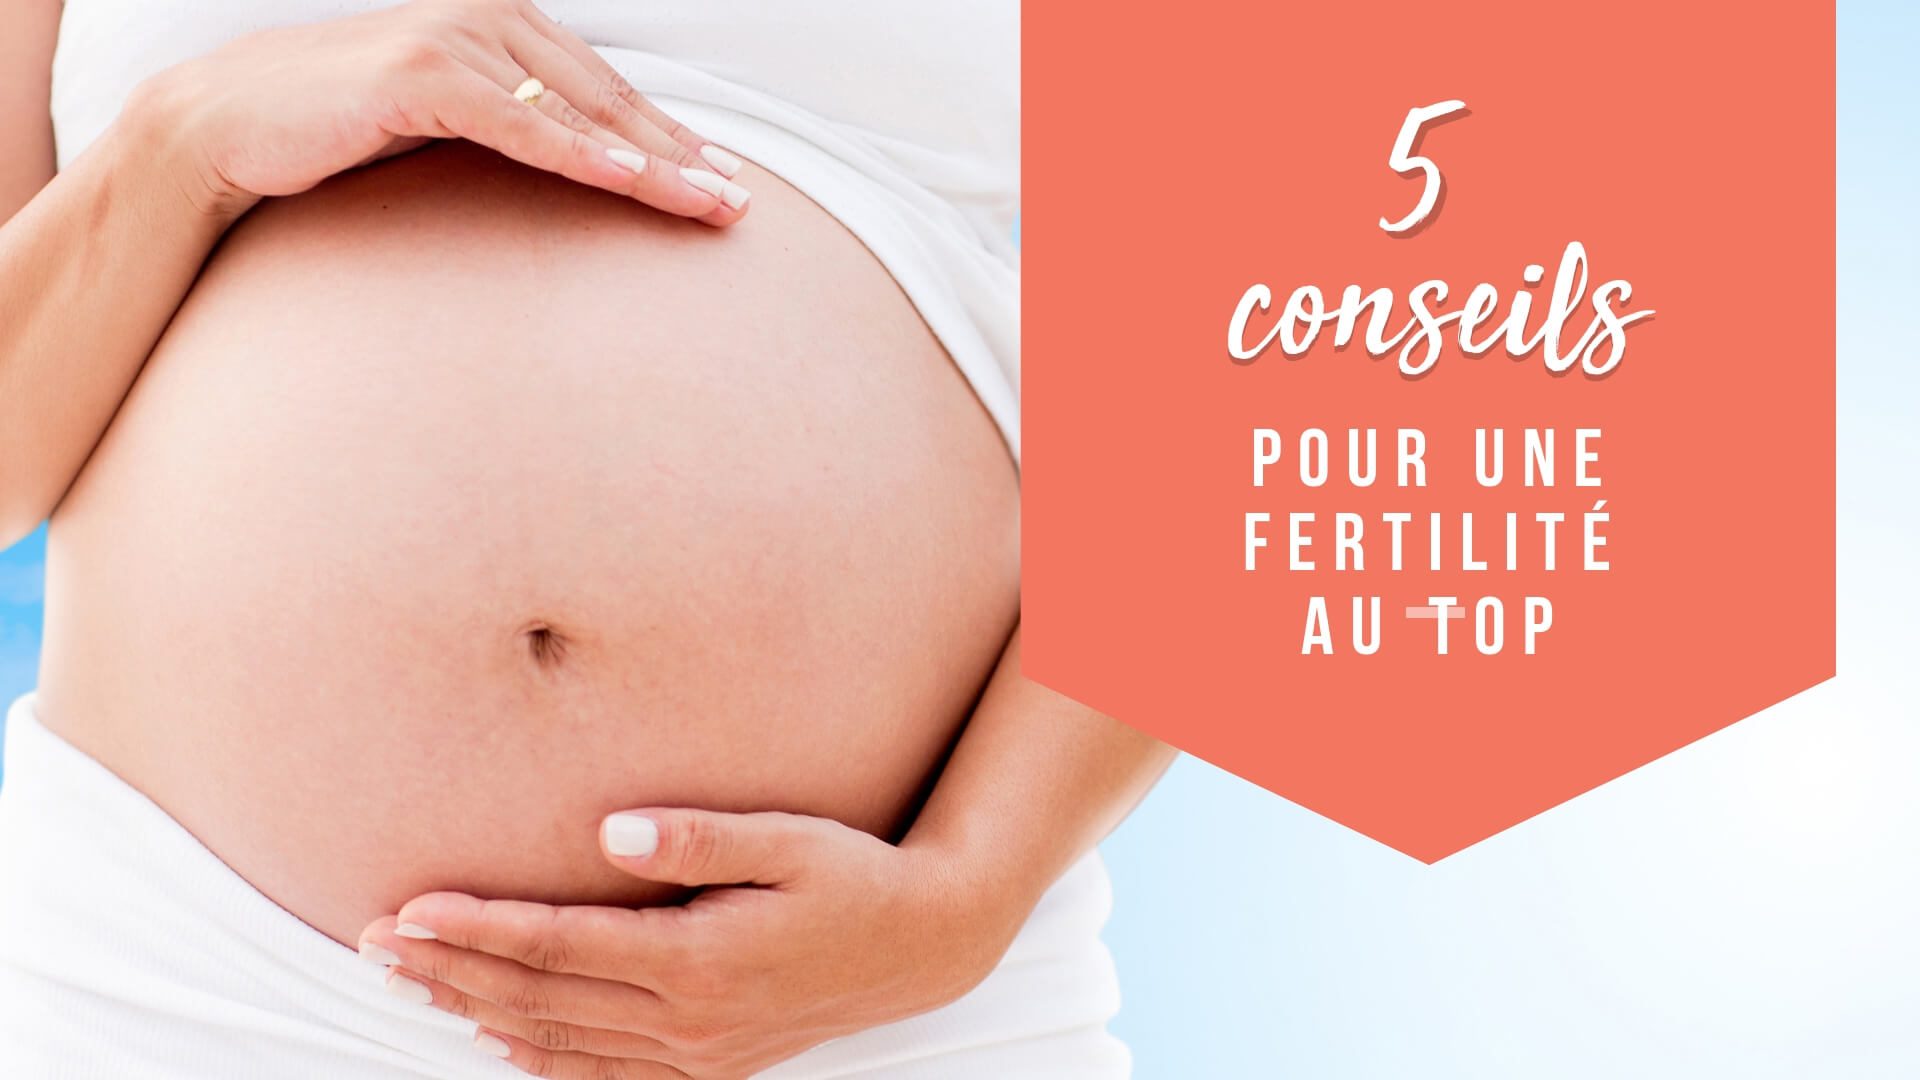 5 conseils pour une fertilité